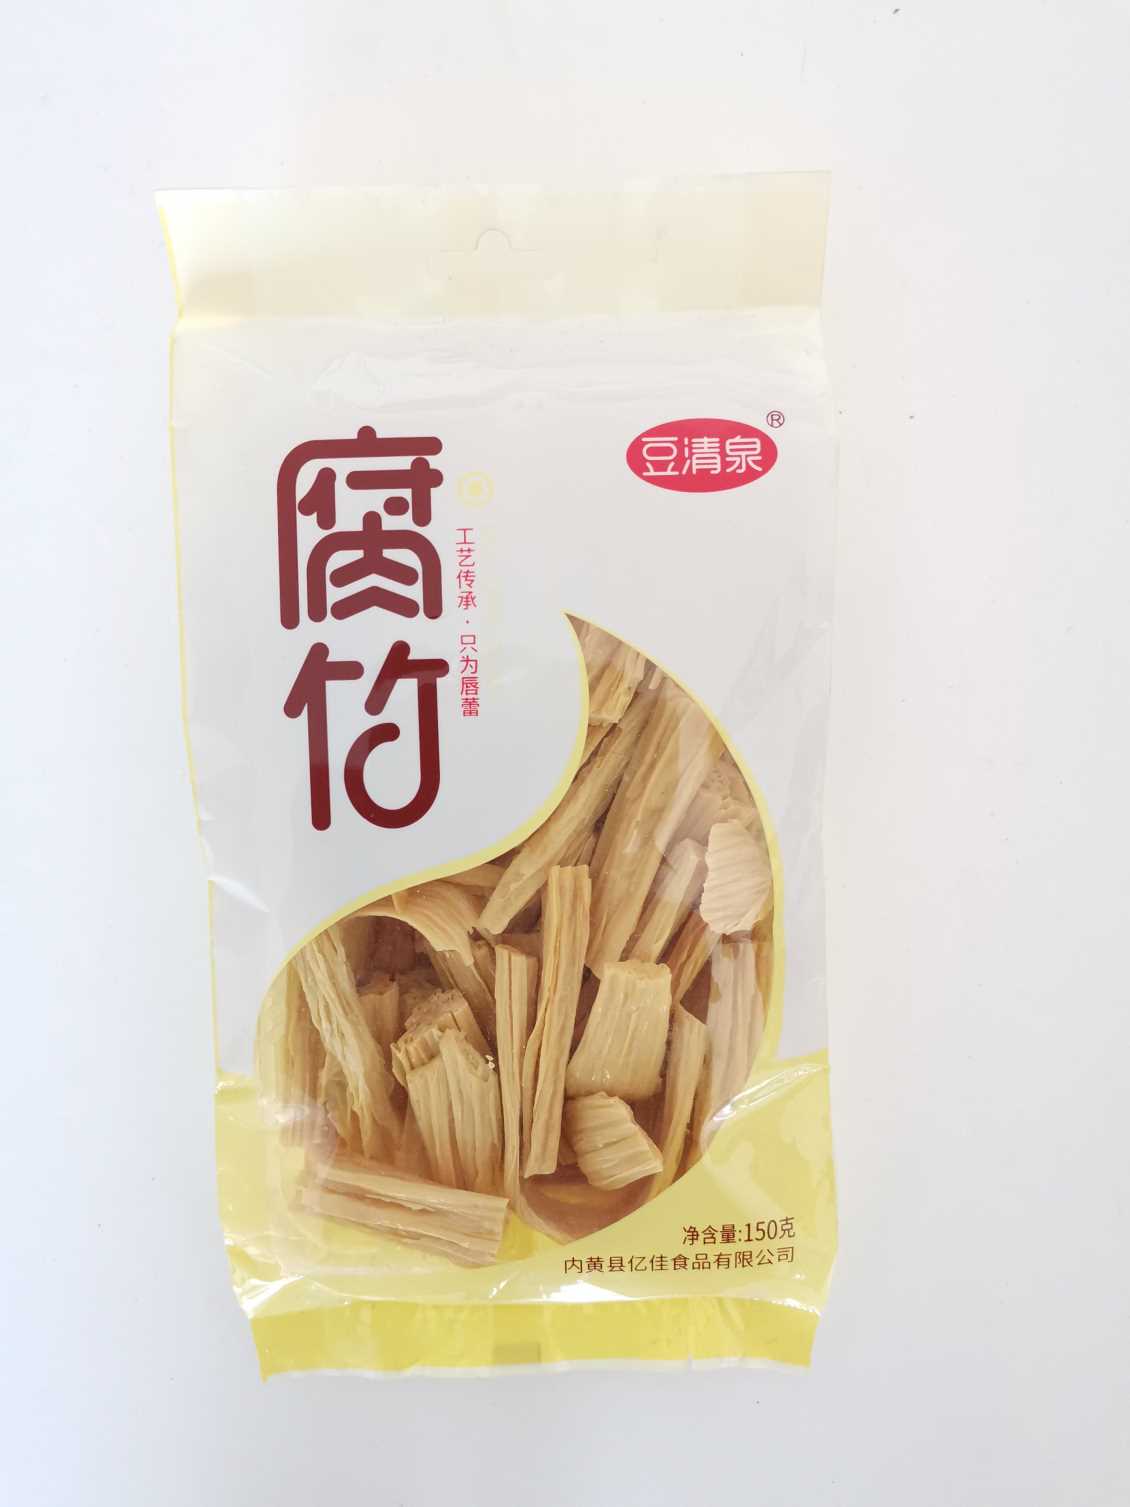 山东腐竹厂家介绍黄豆腐竹的加工全过程